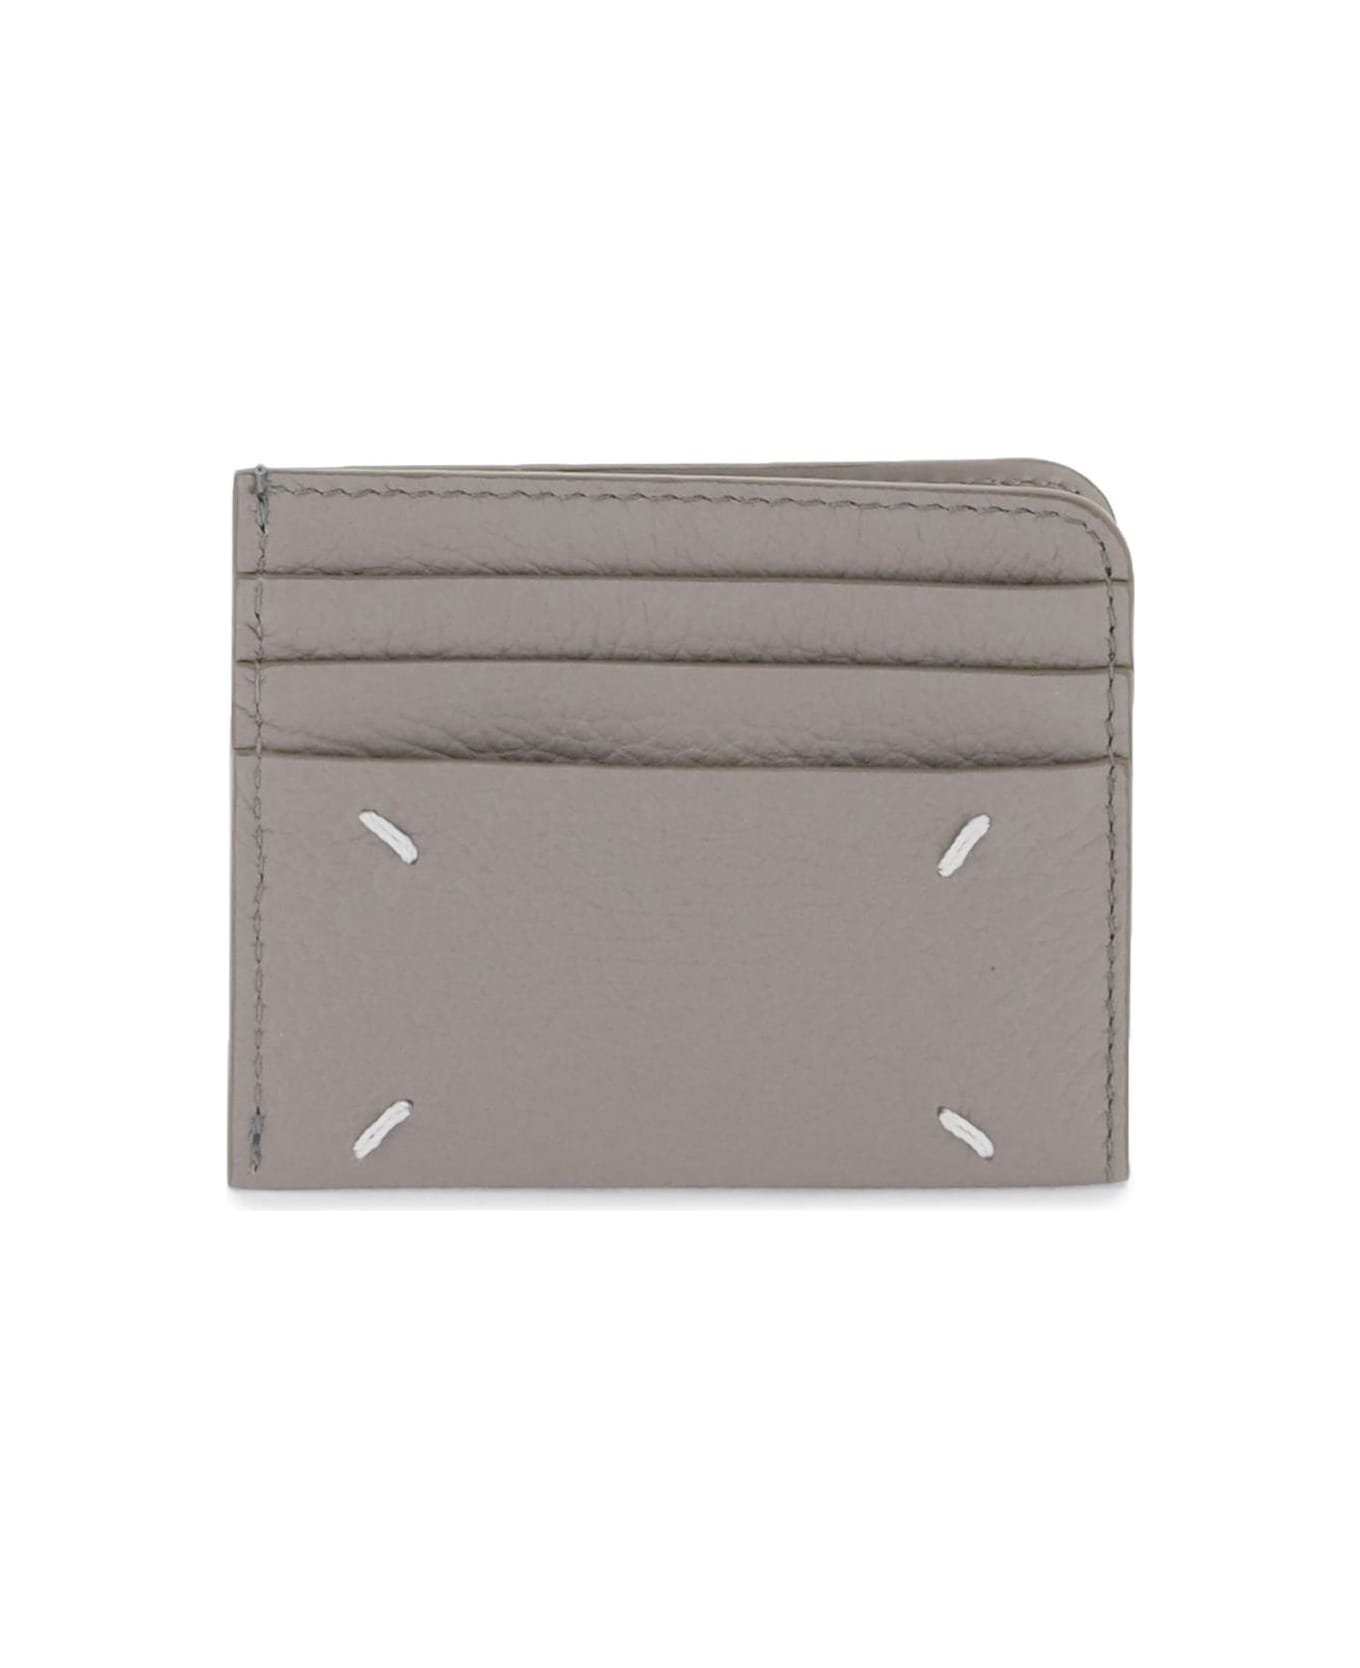 Maison Margiela Leather Card Holder - SMOKE (Grey) 財布